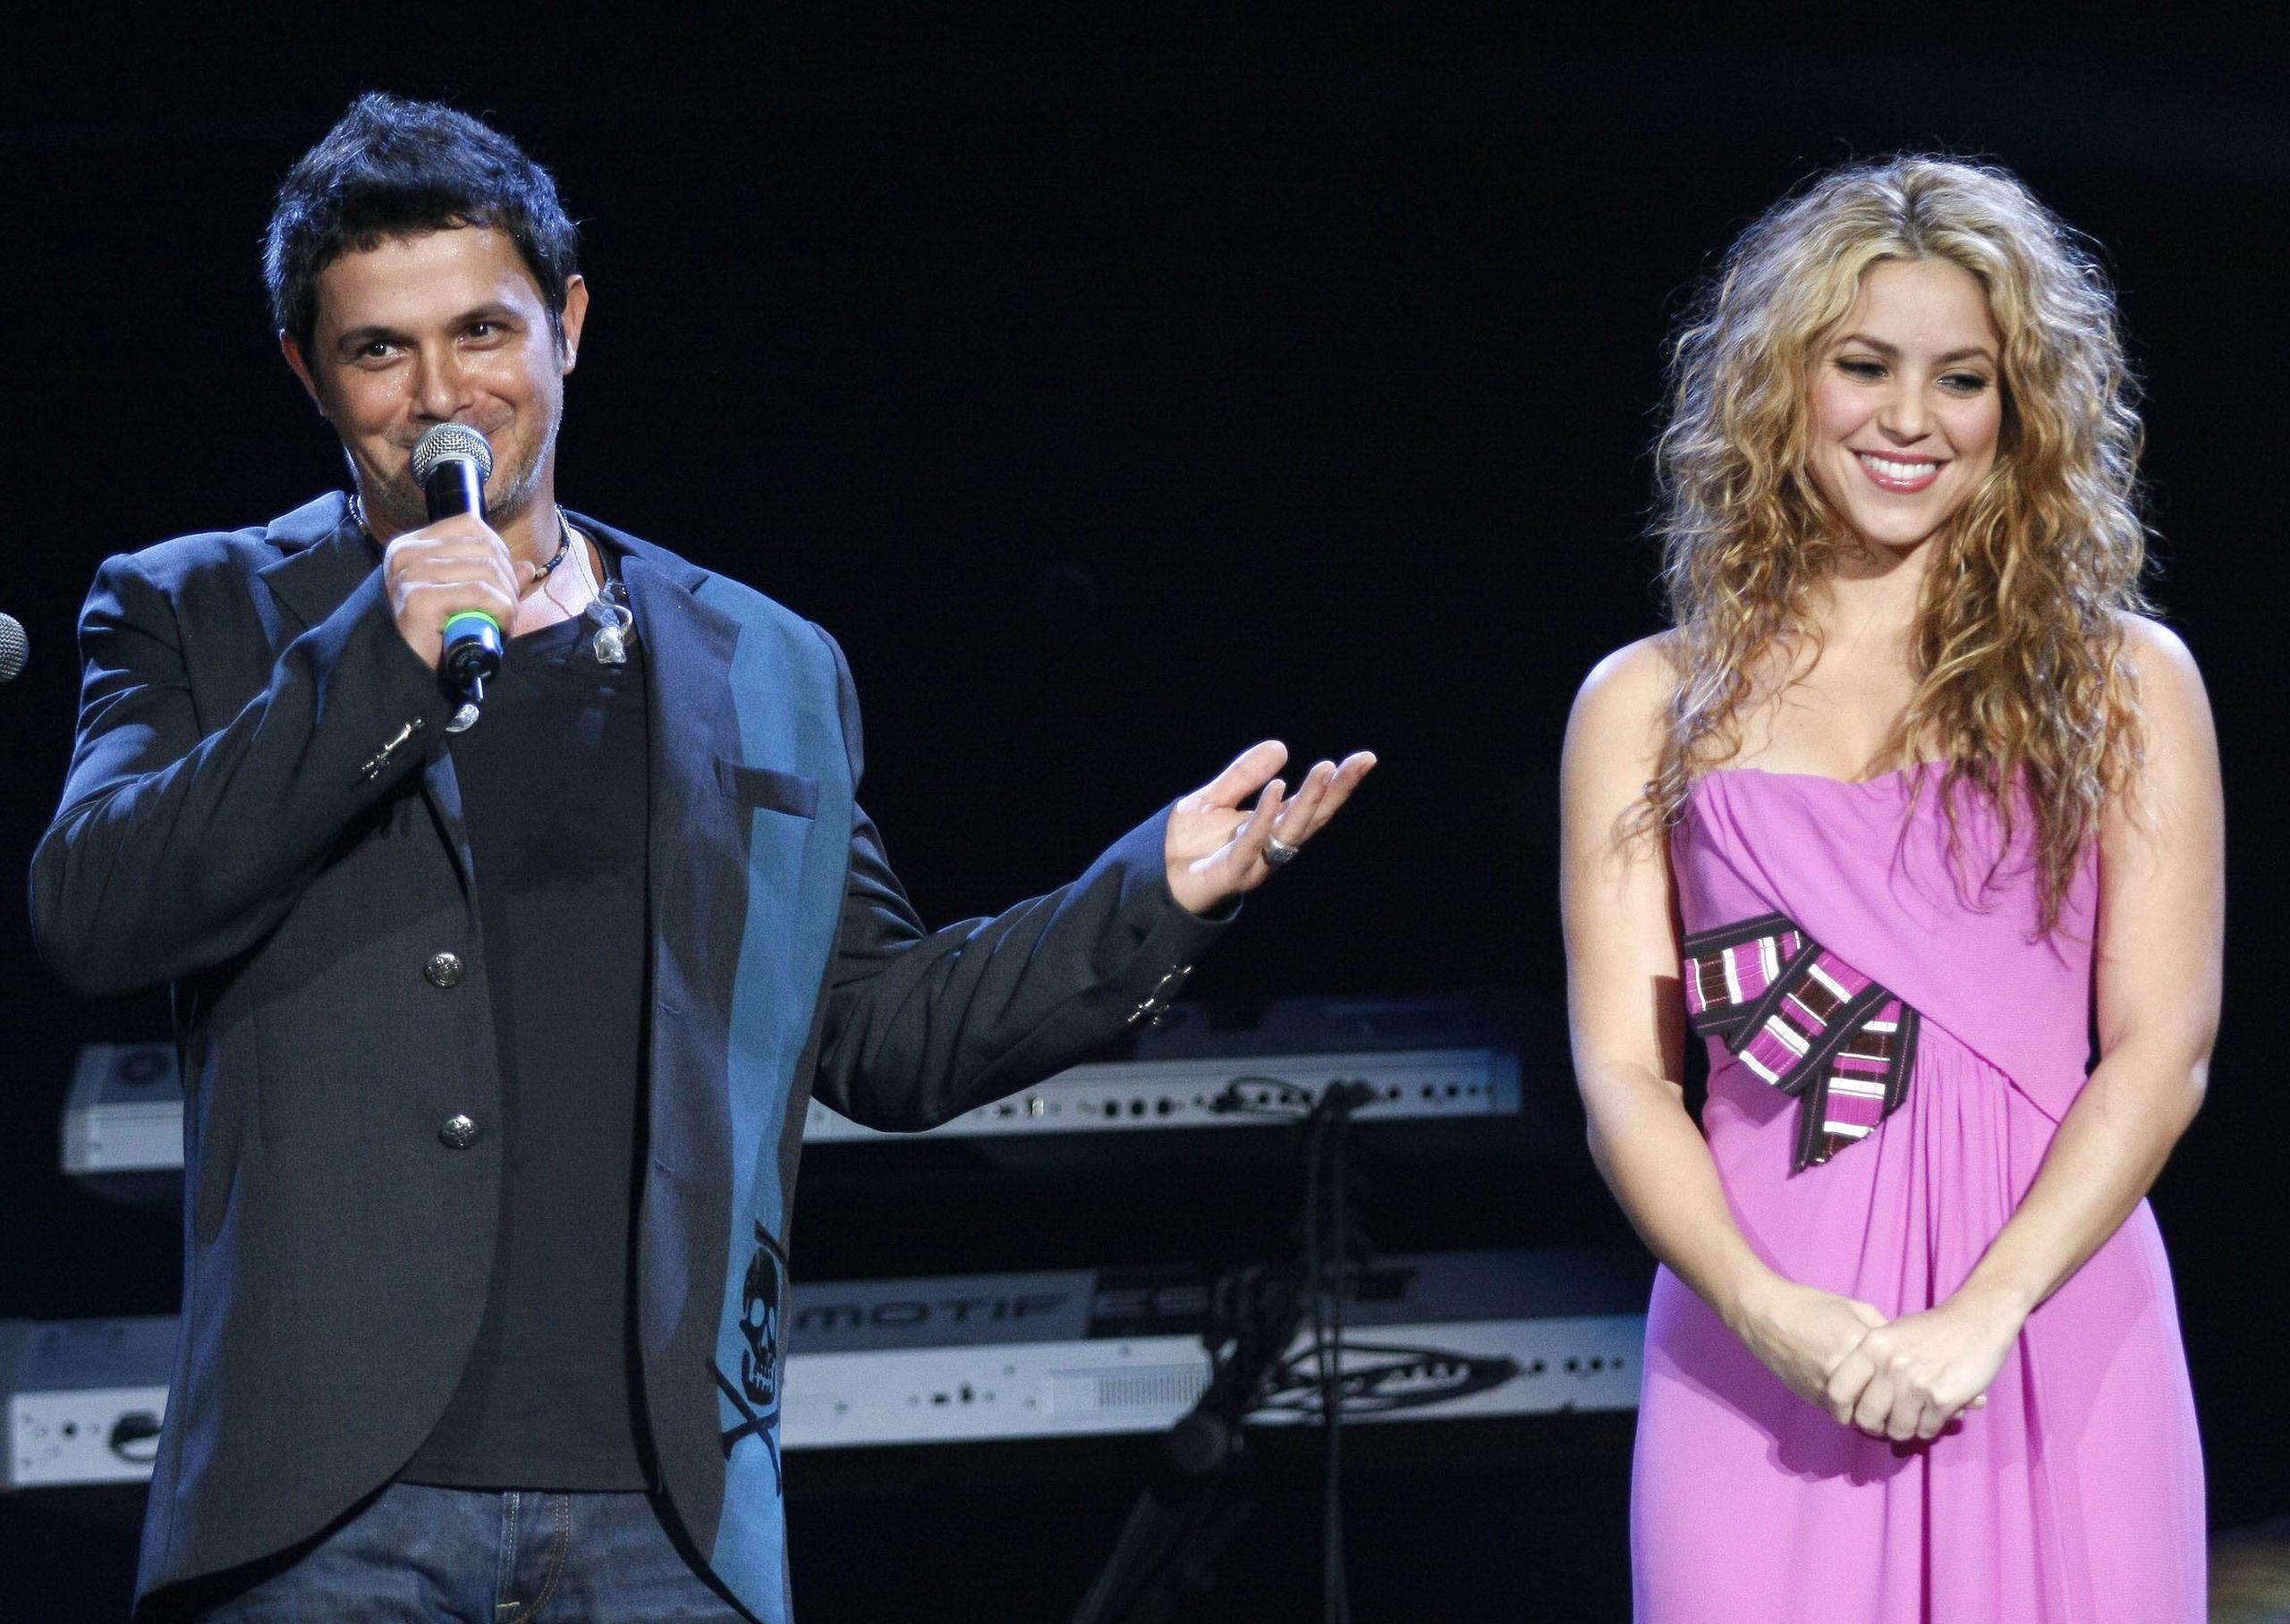 El español Alejandro Sanz y la colombiana Shakira en un momento de su actuación el 21de noviembre de 2008 en "El Gran Concierto" como parte de la celebración del 25 aniversario de SBS, que tuvo lugar en Miami, Florida